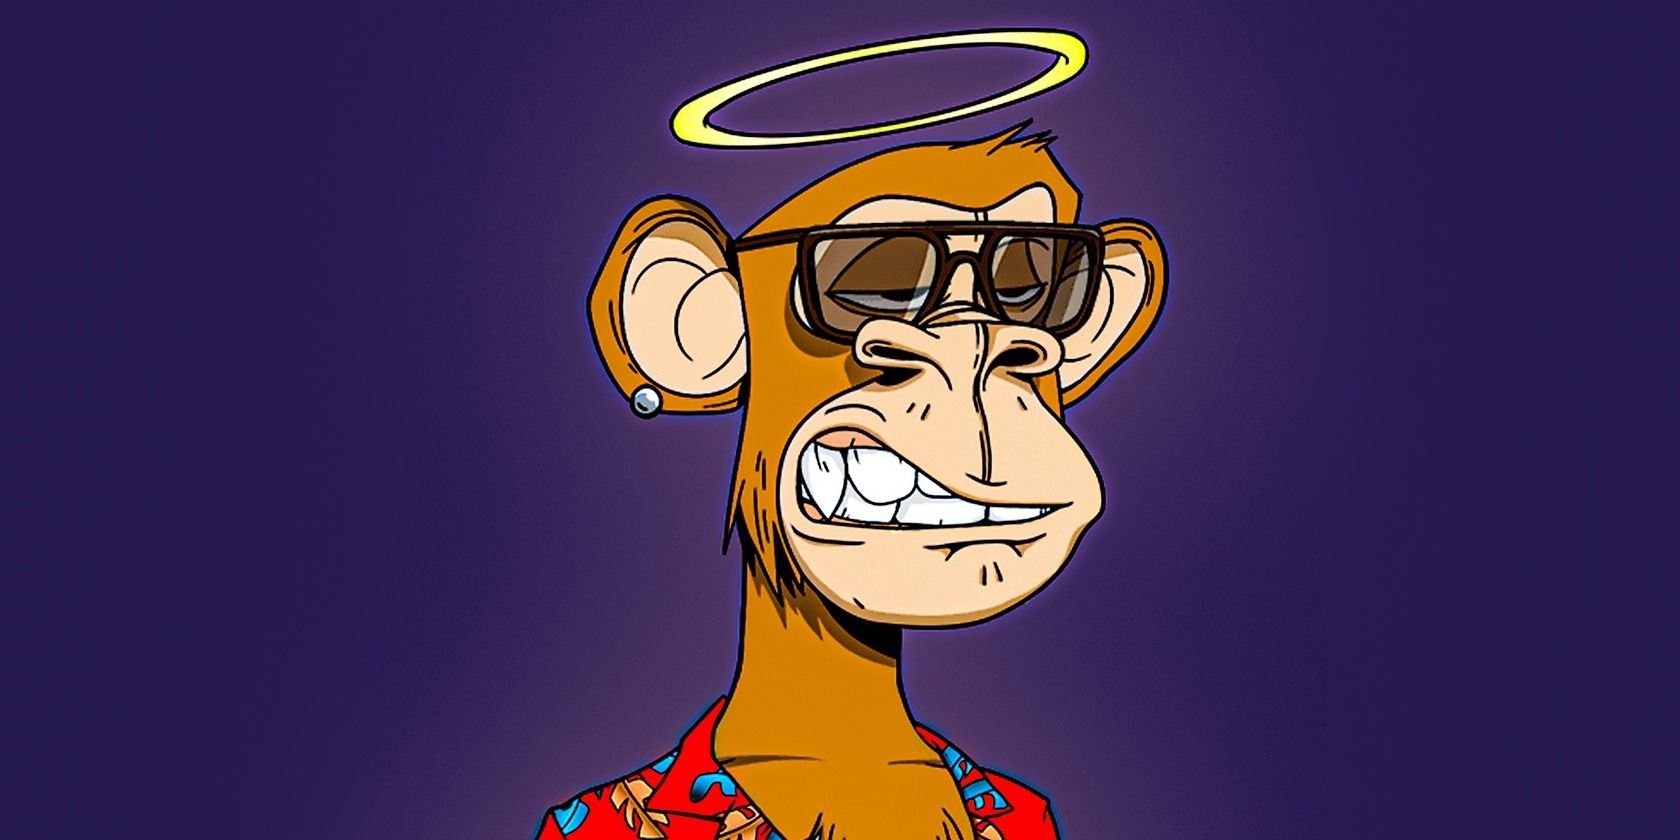 Animated Bored Ape [ Stephen Curry ] - Animated Bored Ape